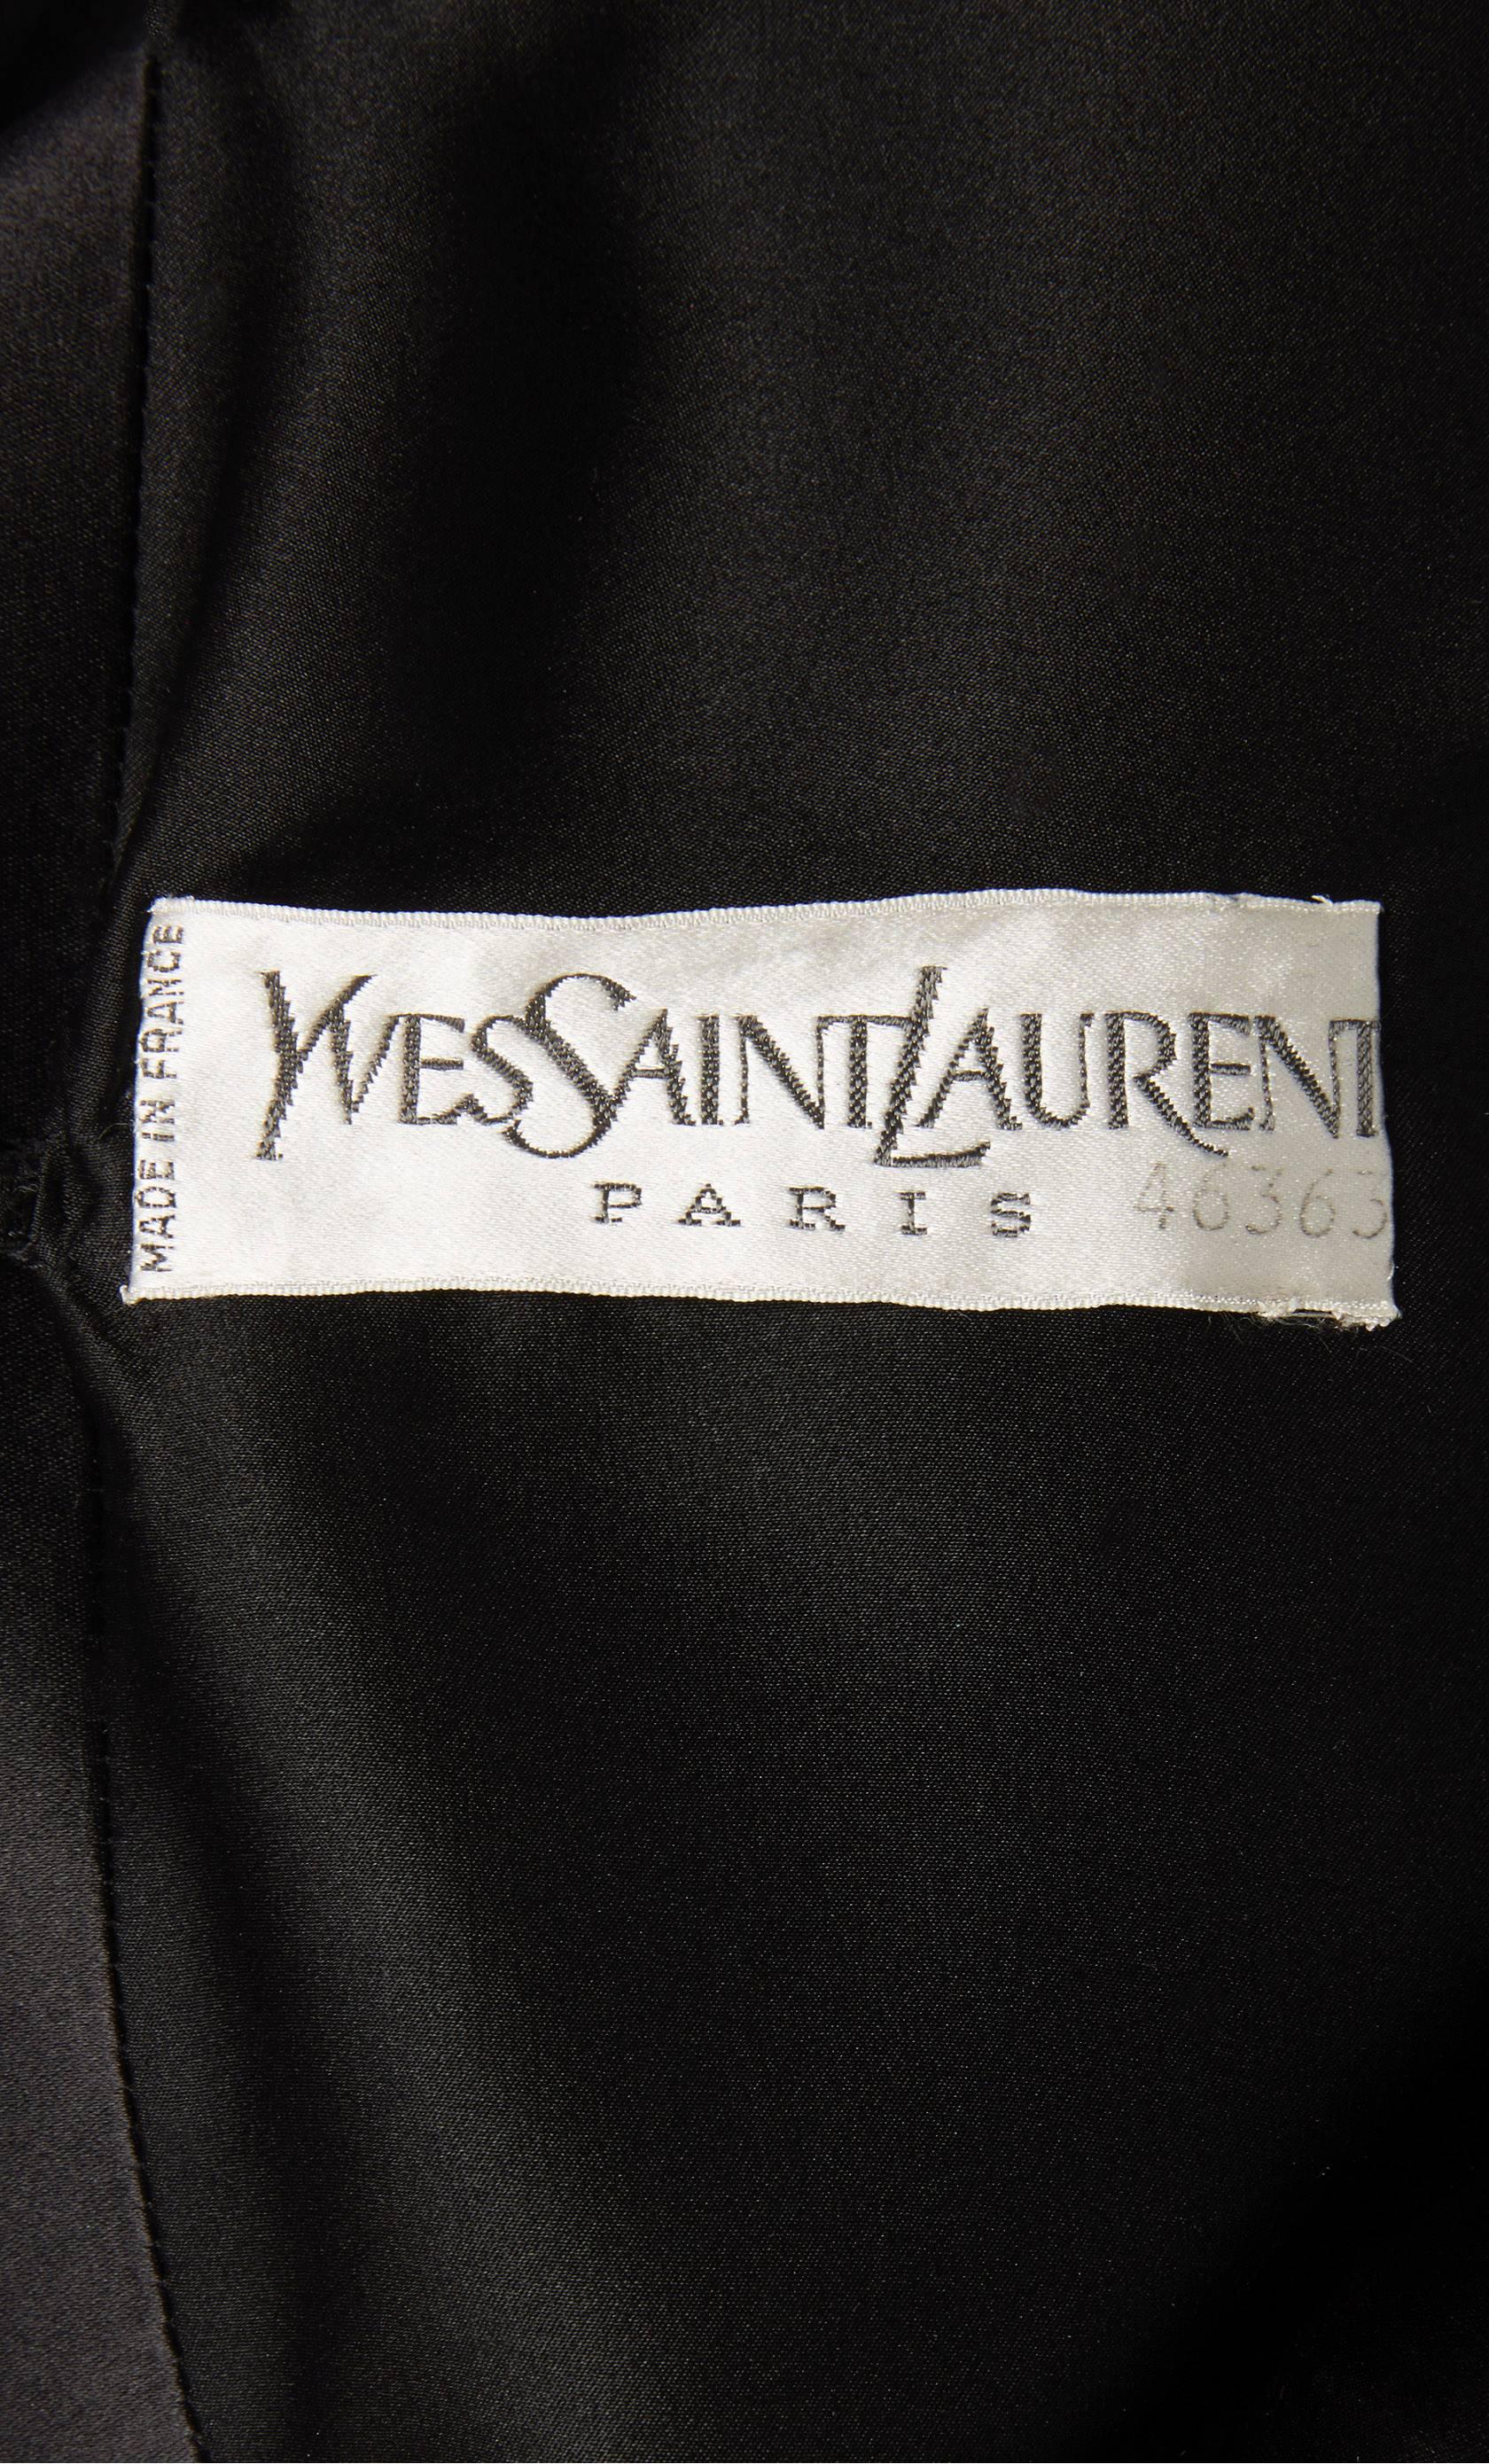 Women's Yves Saint Laurent haute couture black dress, Autumn/Winter 1979